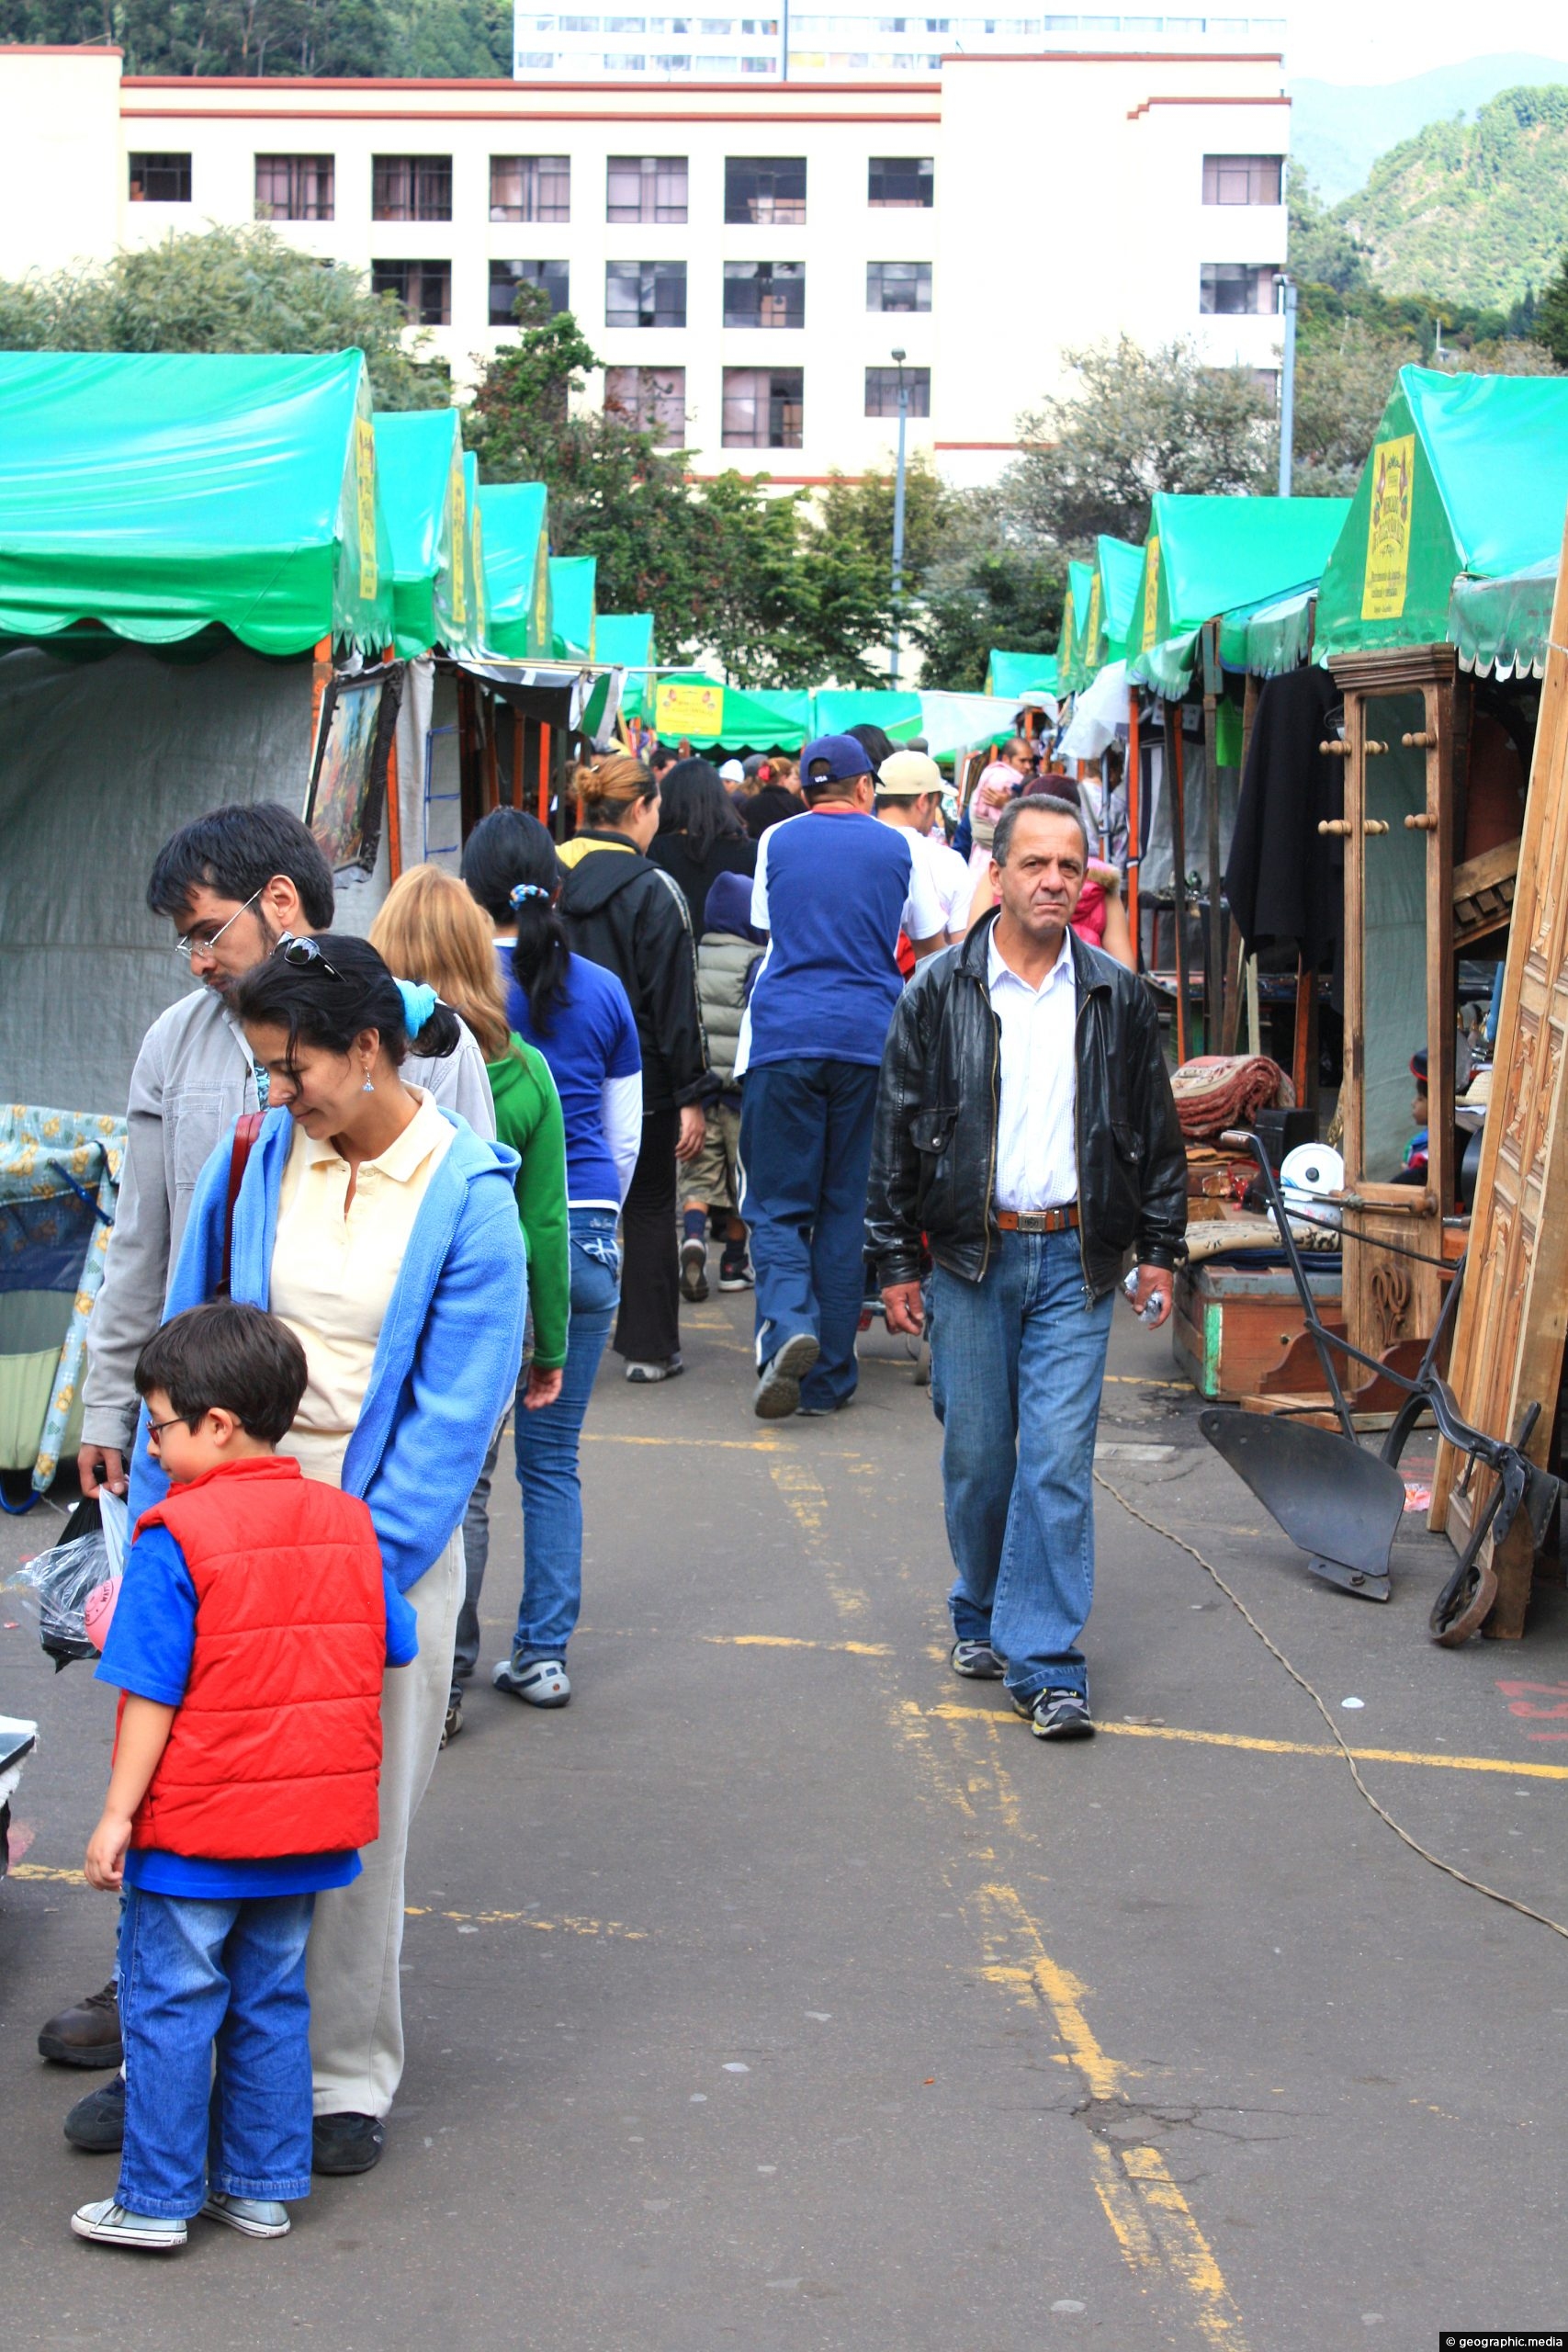 San Alejo Market in Bogota